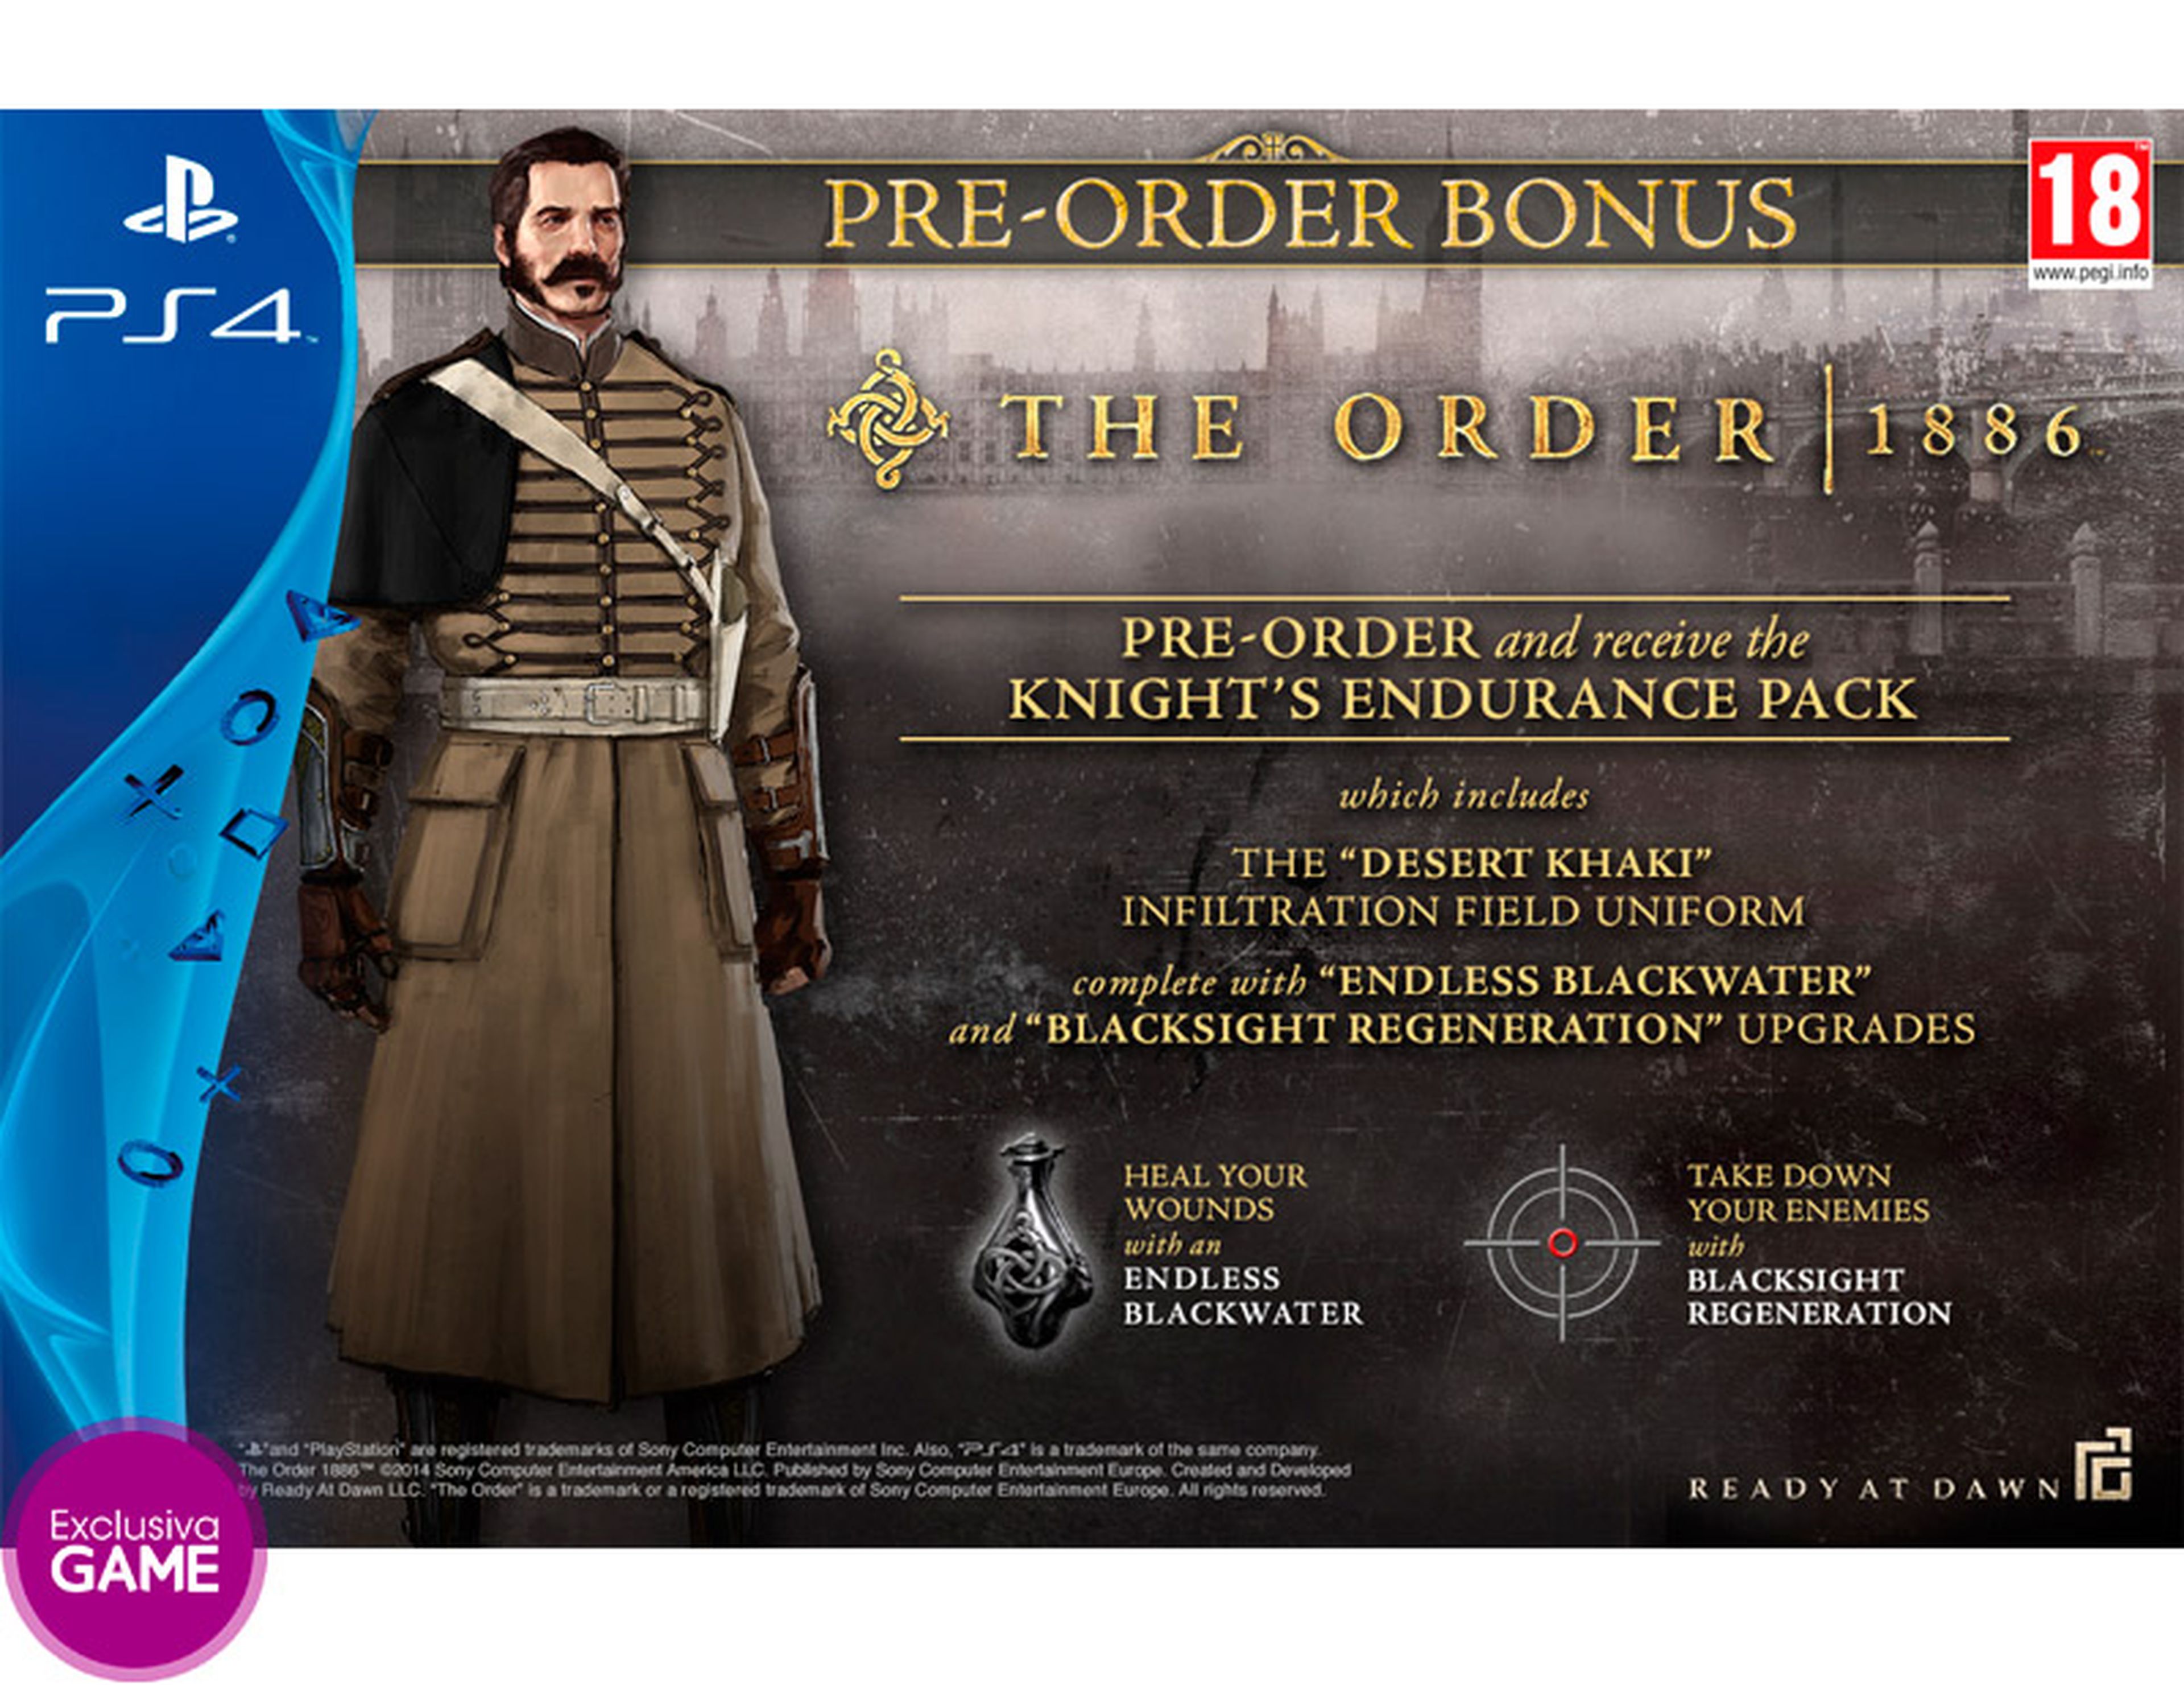 The Order 1886 tendrá una edición limitada exclusiva en Game